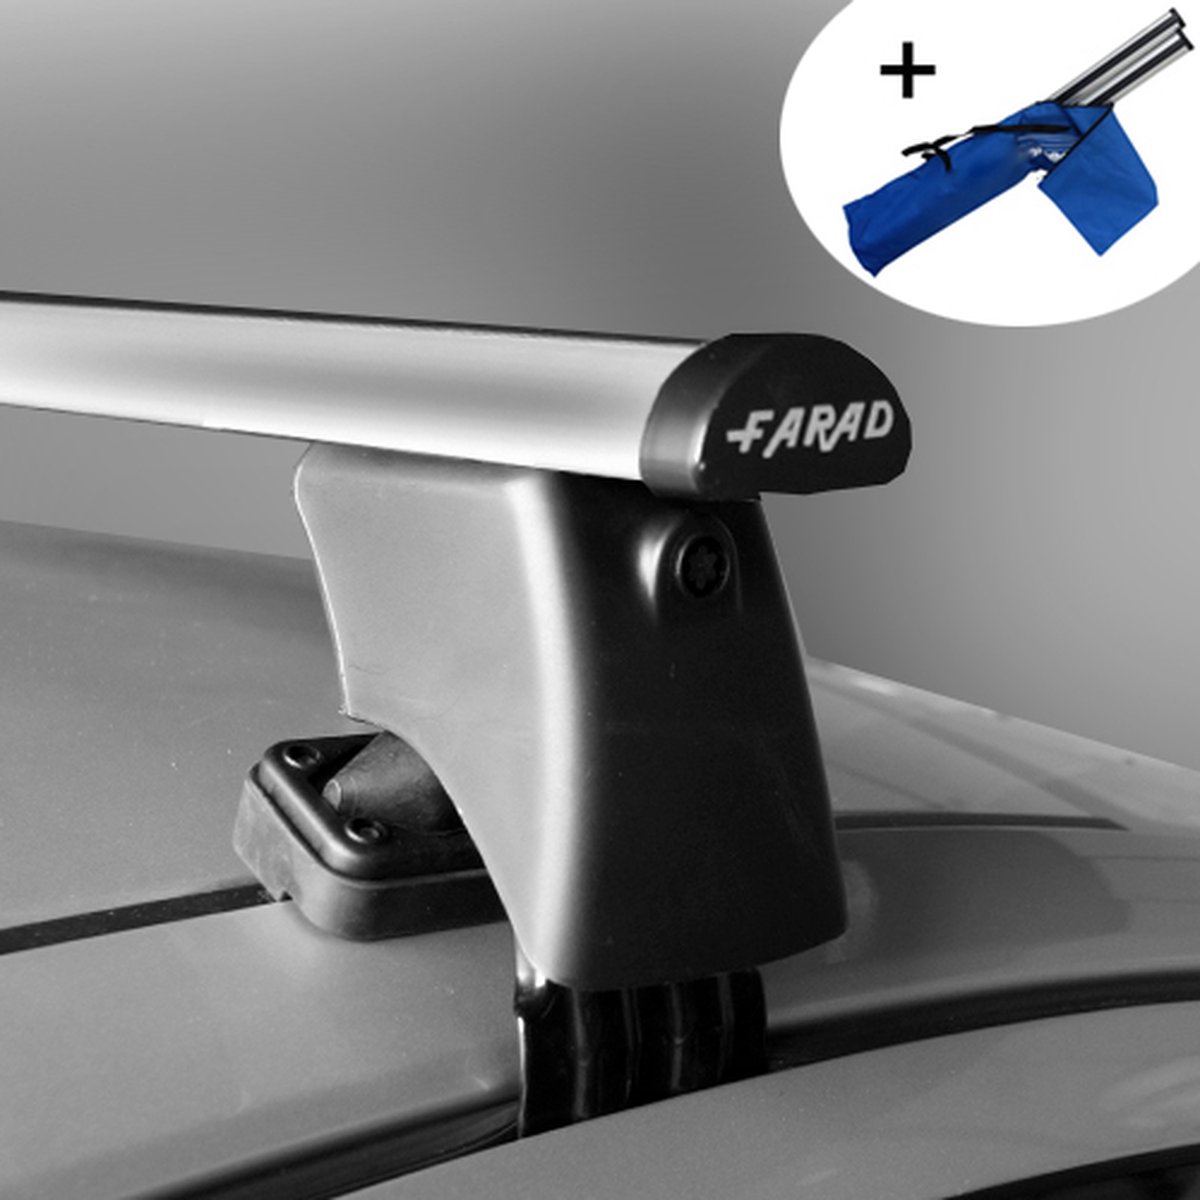 Dakdragers geschikt voor Ford Ecosport SUV vanaf 2014 - Aluminium - inclusief dakdrager opbergtas